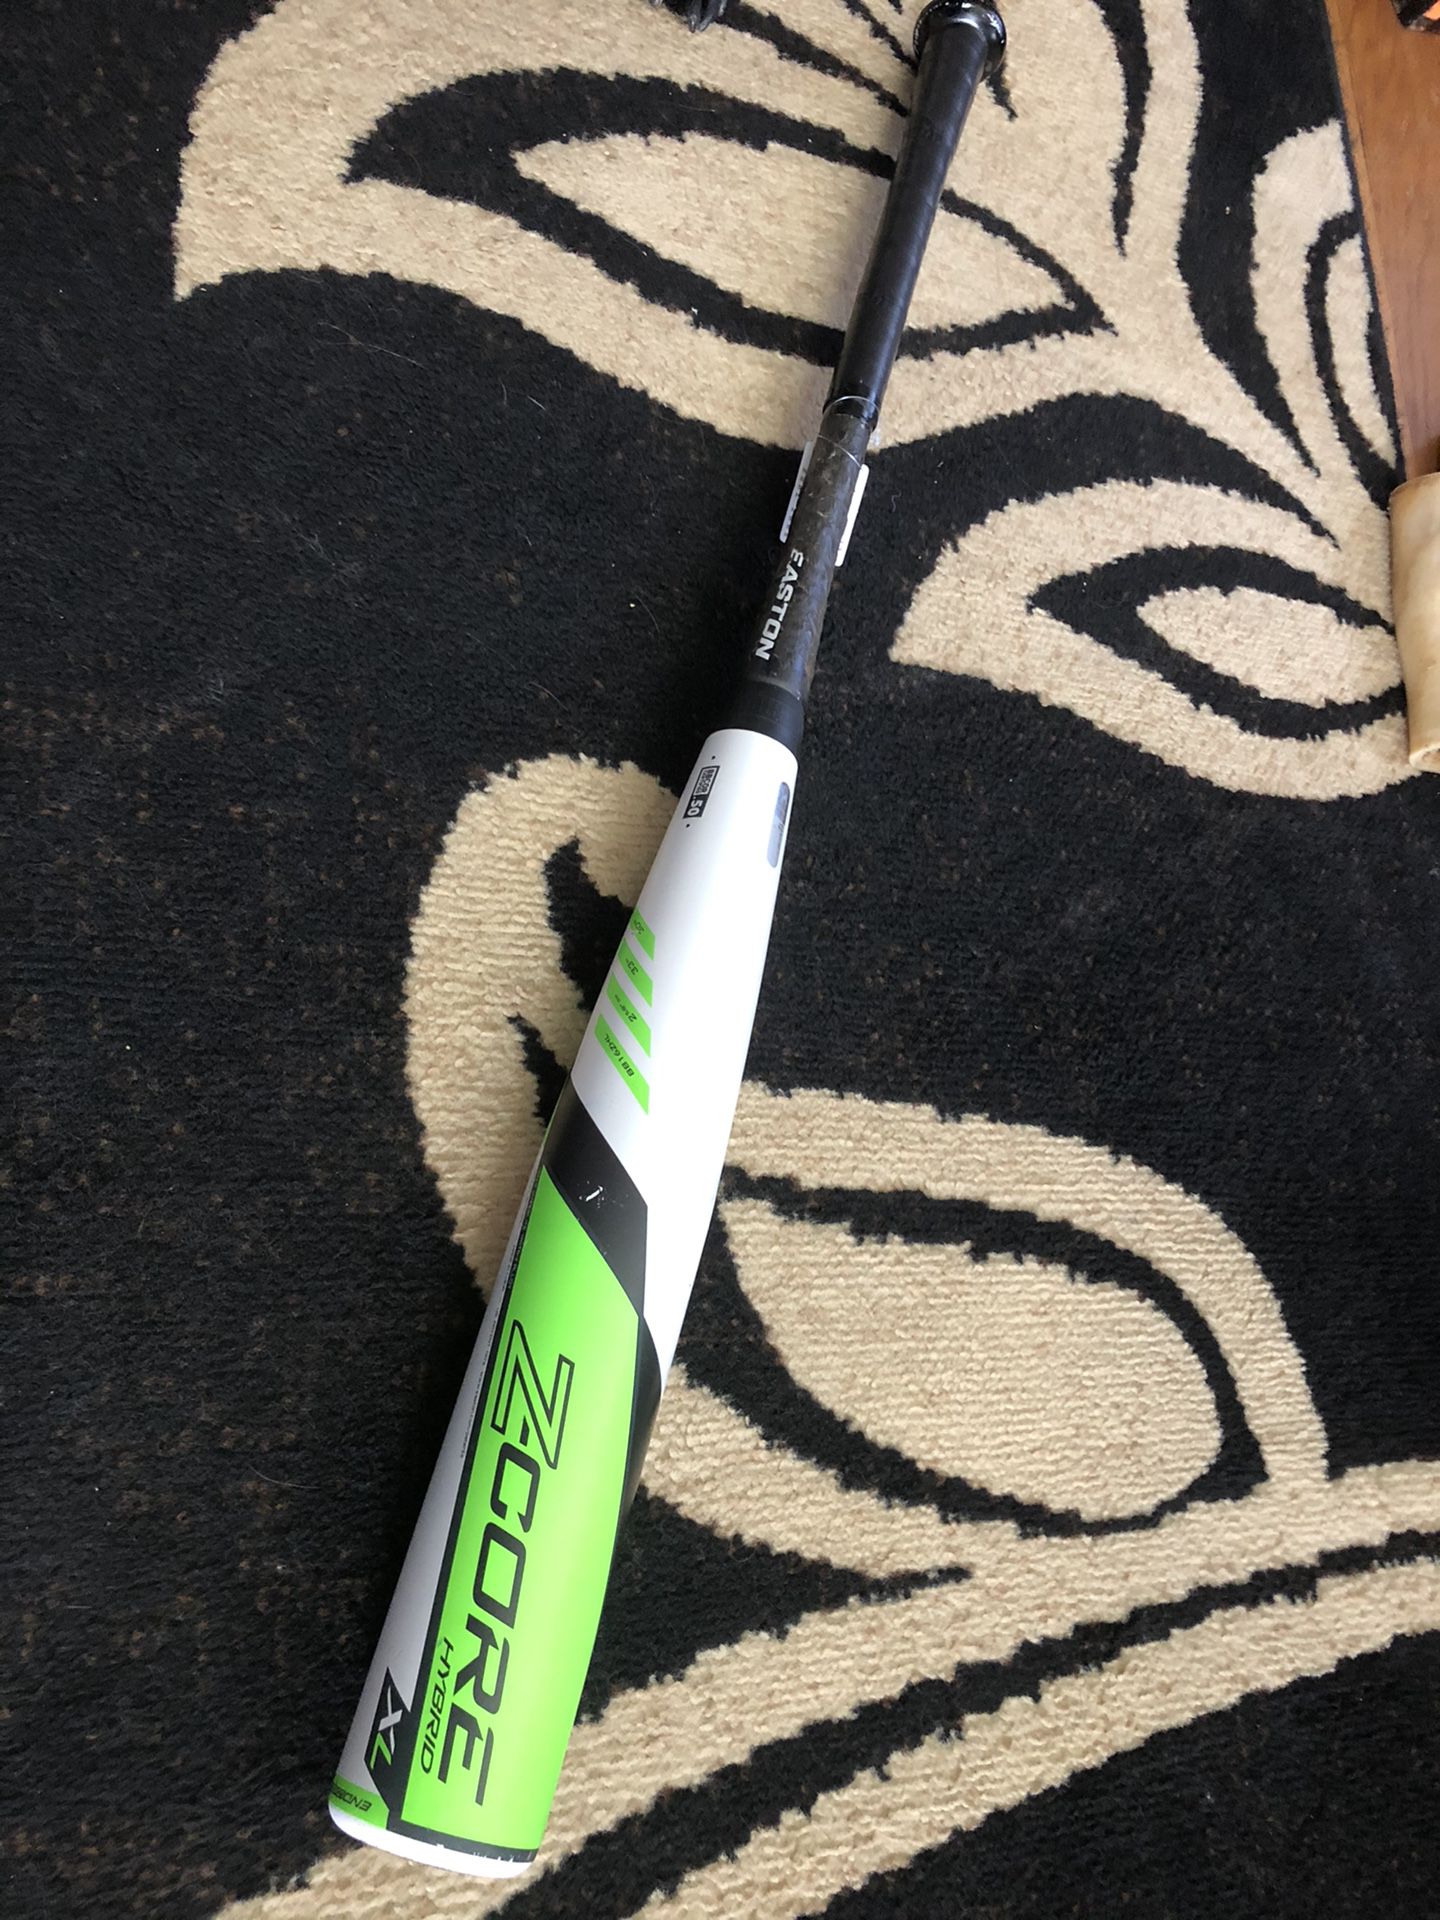 Easton Z-core XL Hybrid 33”30oz BBCOR baseball bat